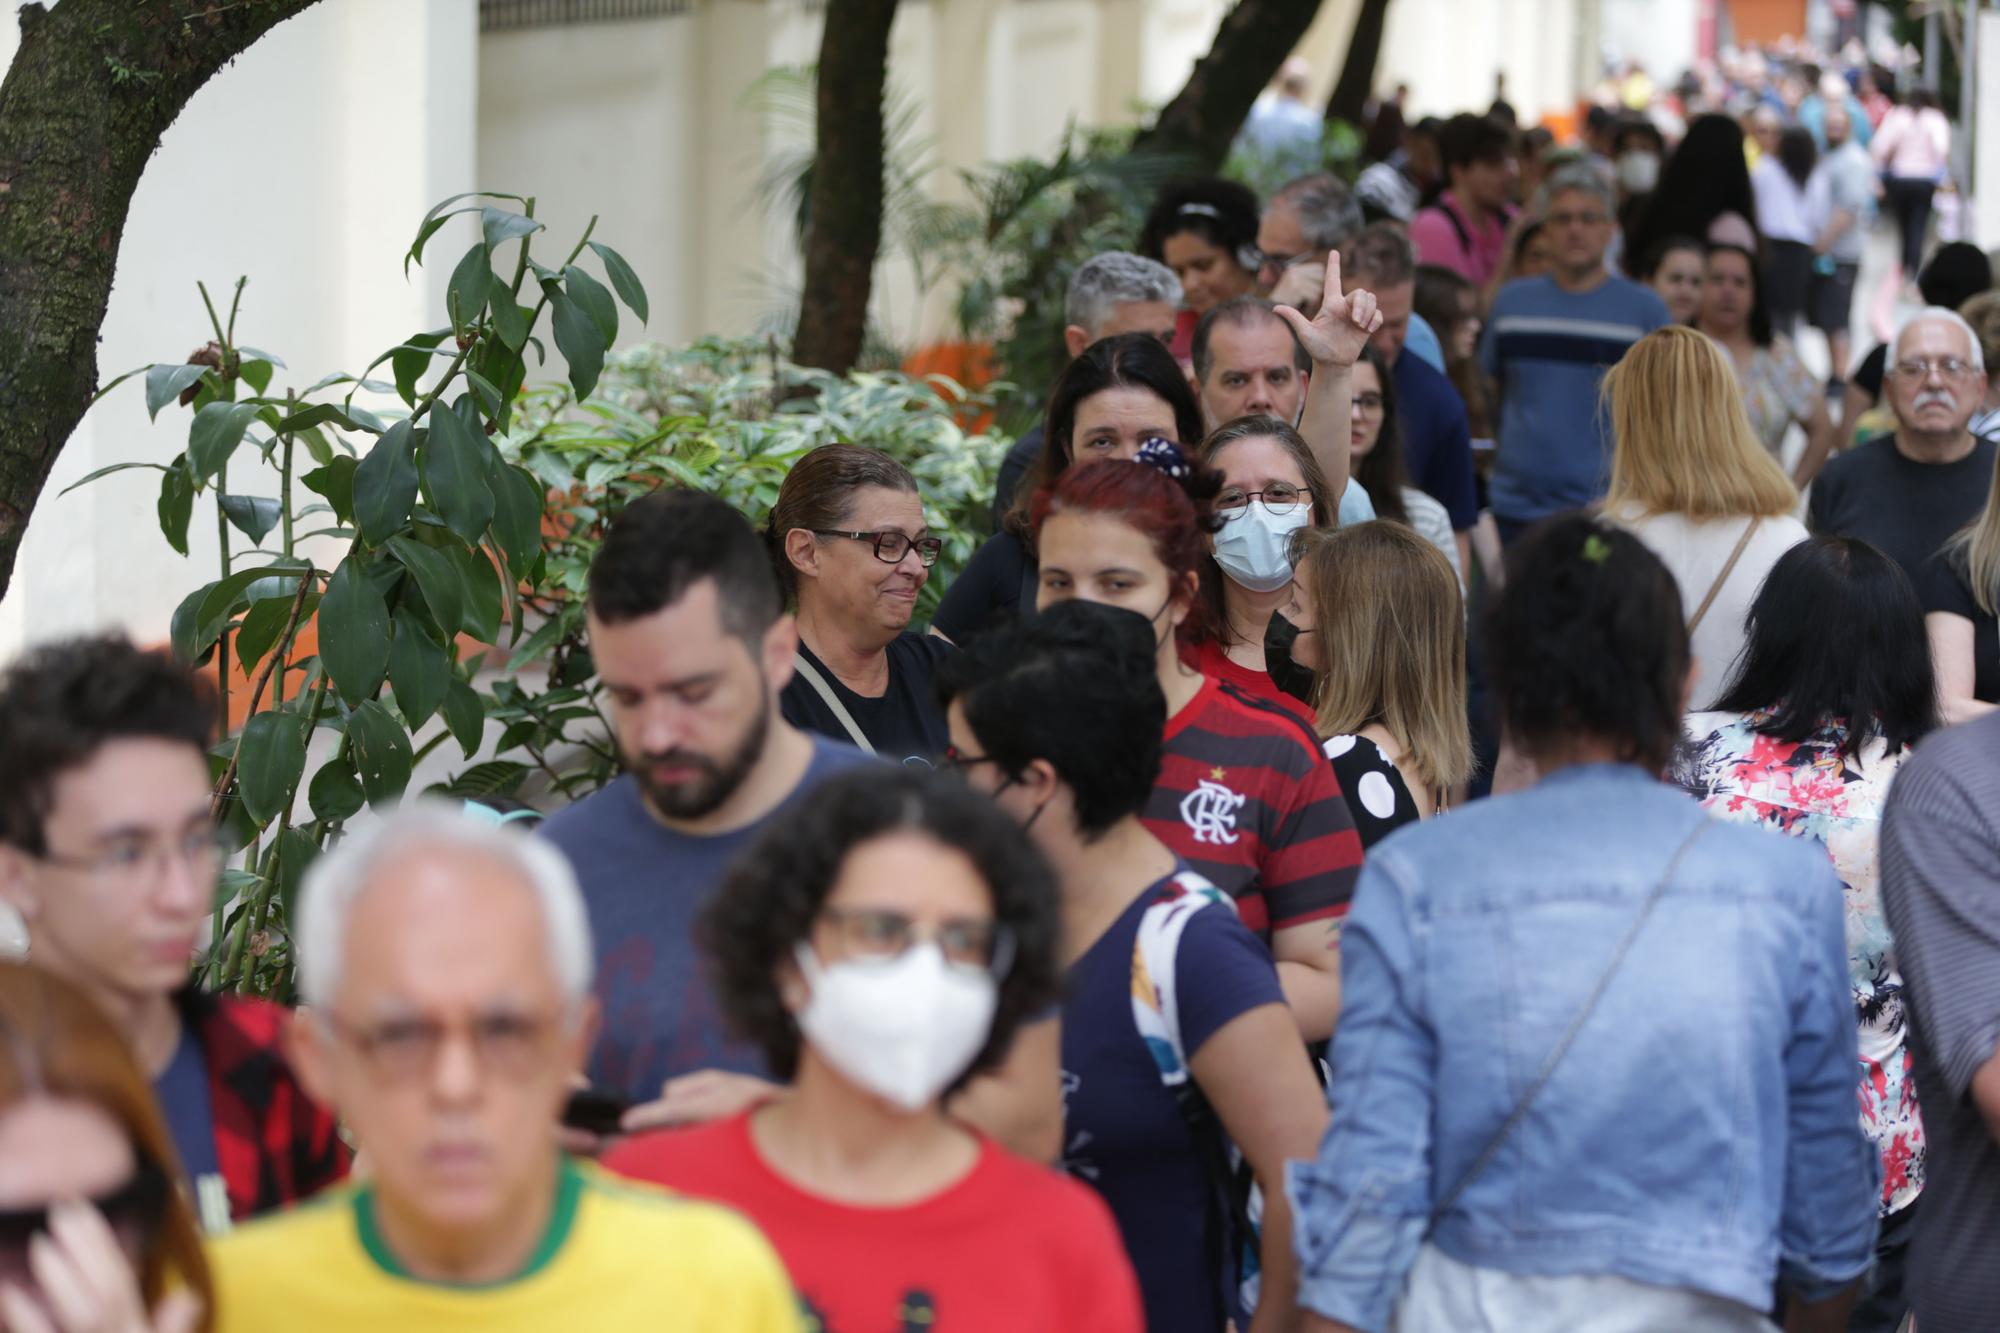 Elecciones en Brasil transcurren con normalidad en sus primeras horas